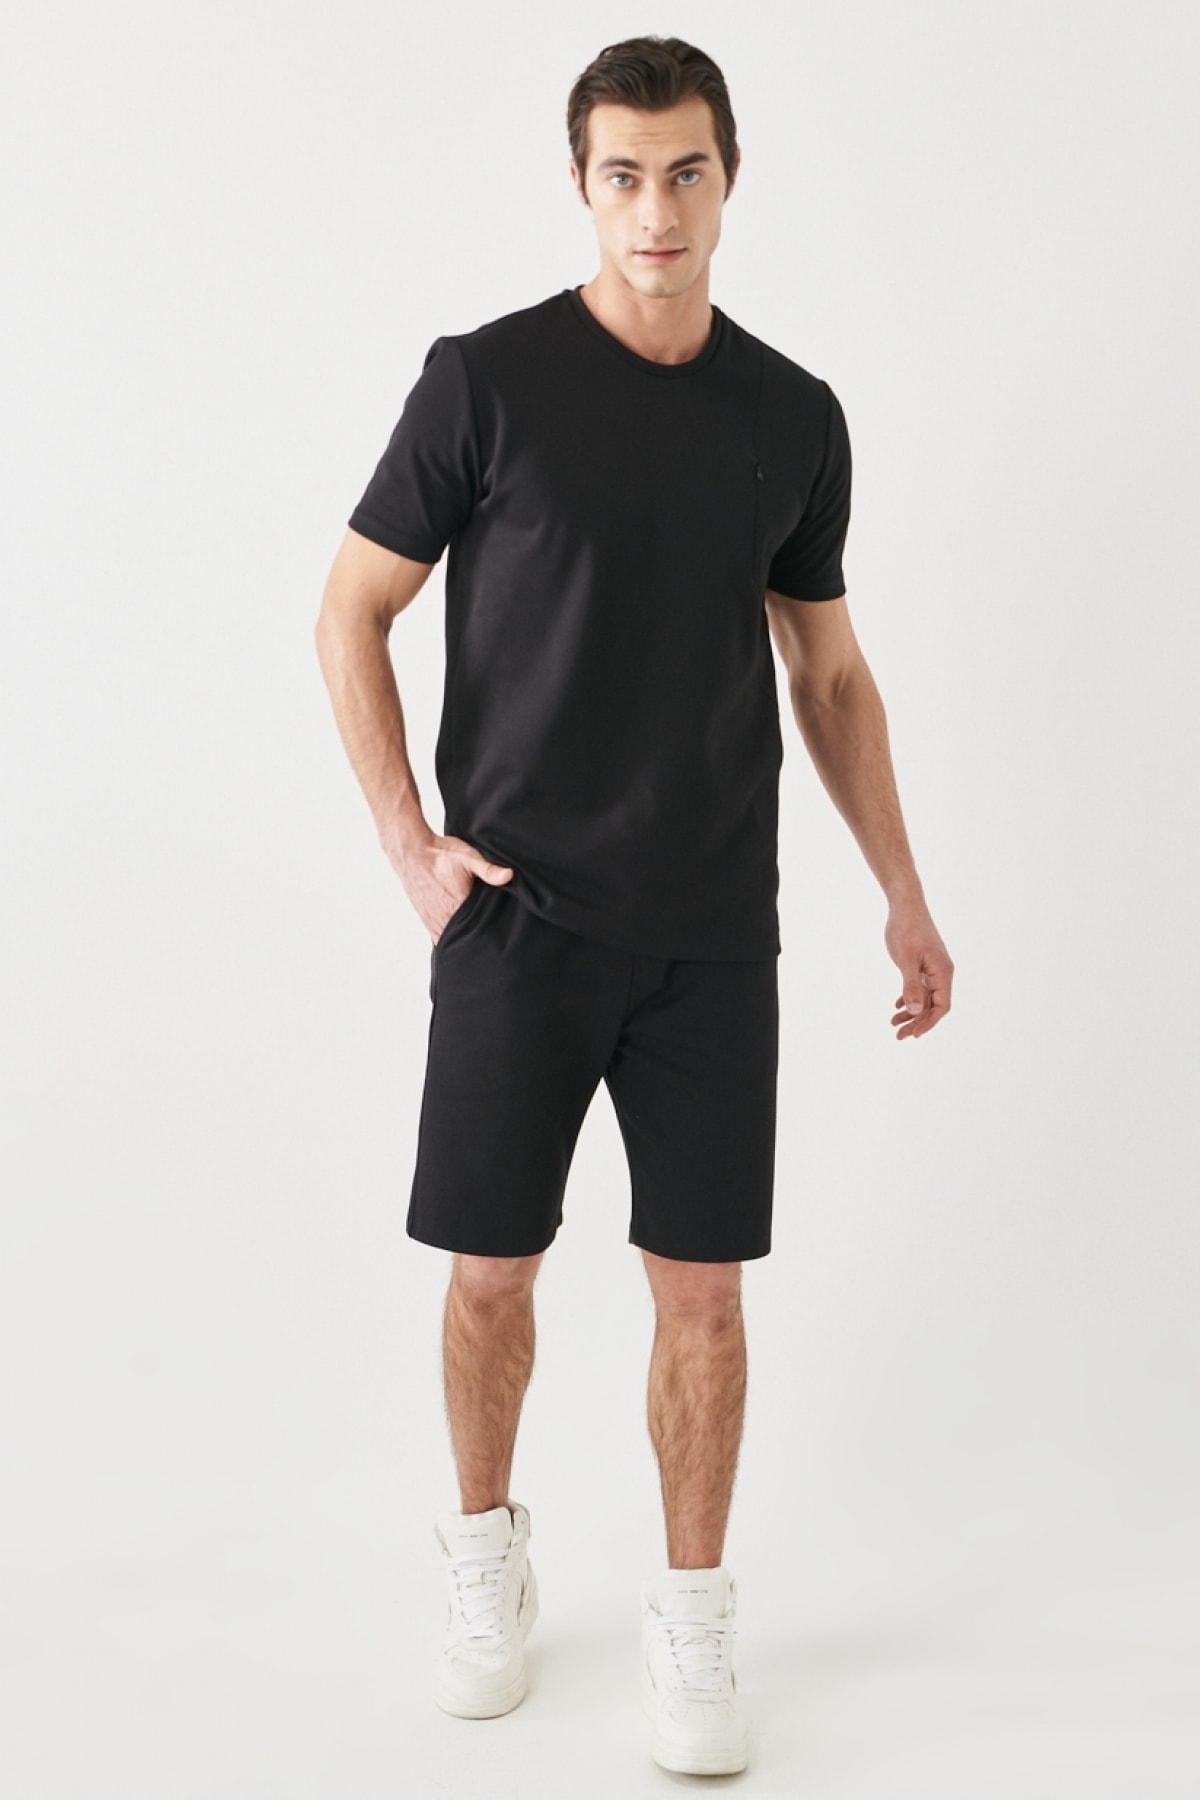 ALTINYILDIZ CLASSICS Men's Black Standard Fit Regular Cut Pocket Tracksuit Set